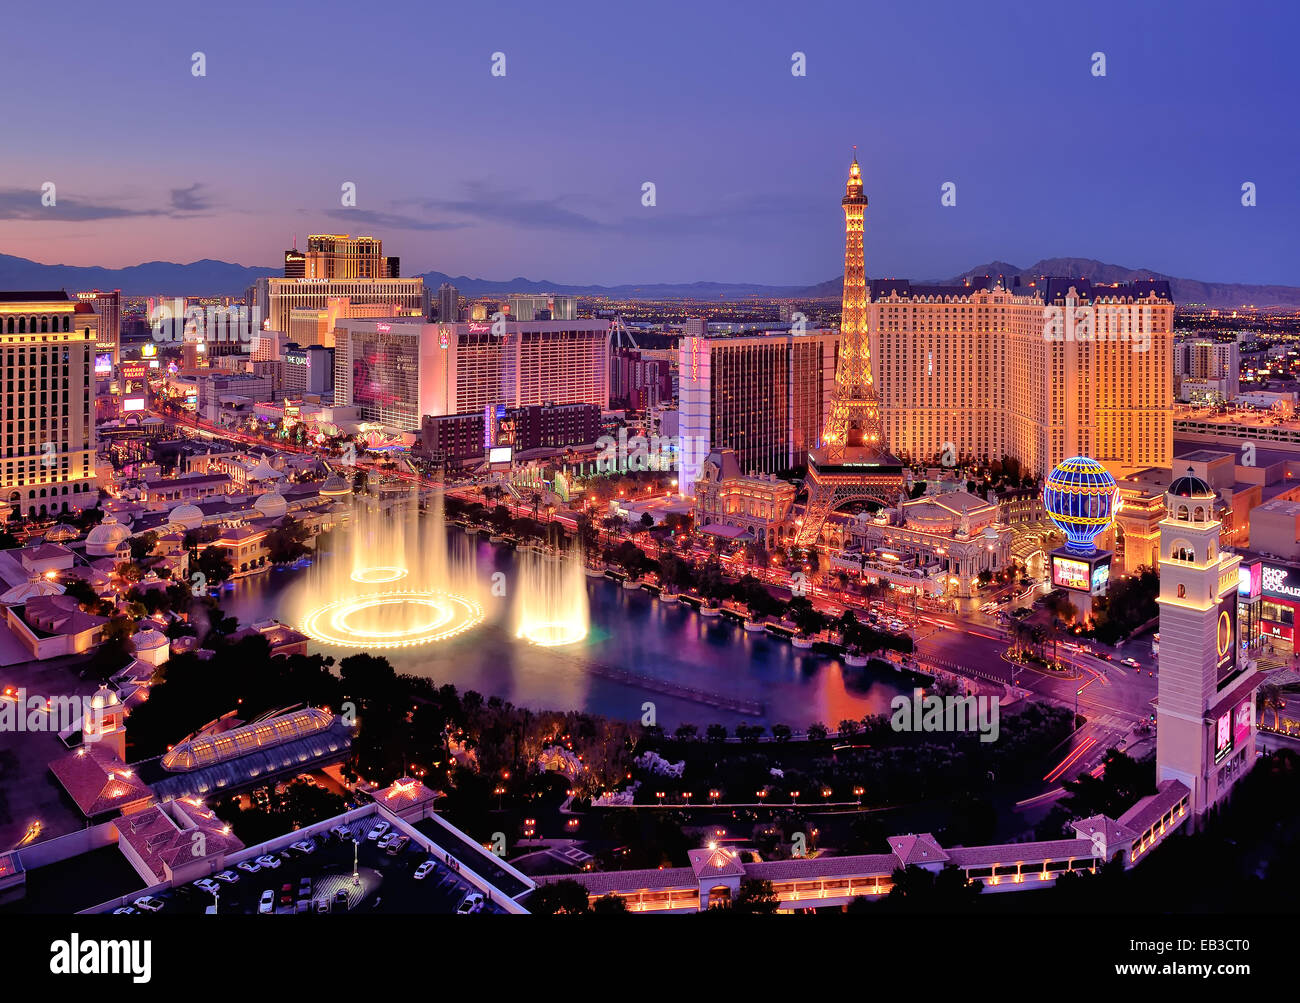 Skyline della città di notte con le fontane dell'hotel Bellagio, Las Vegas, Nevada, USA Foto Stock